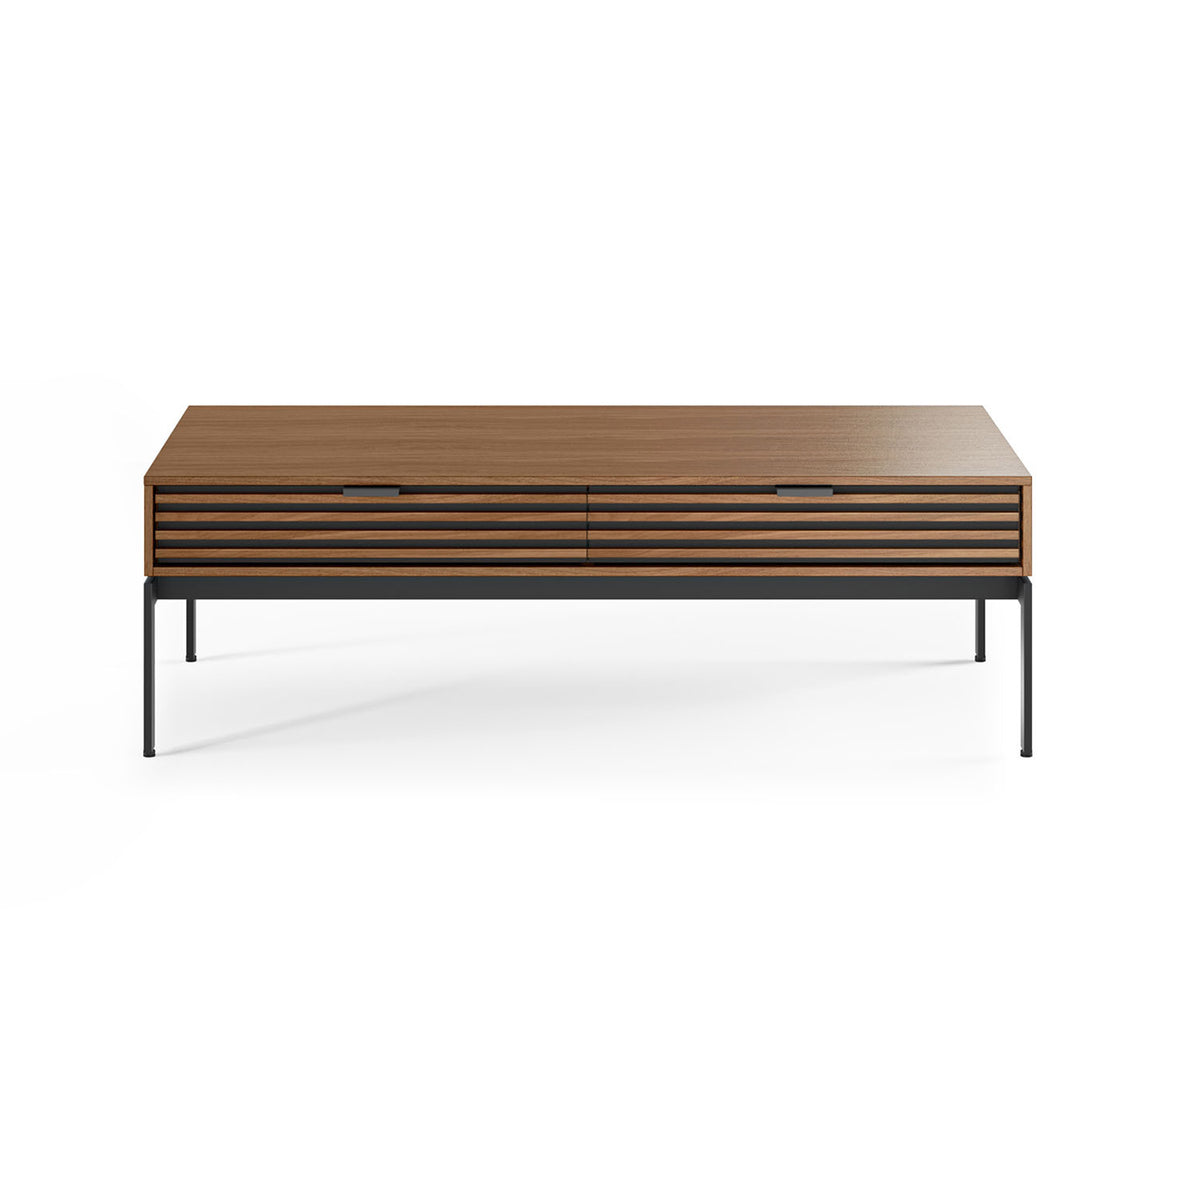 Cora Low Profile Natural Walnut Coffee Table | BDI Furniture - 1172 WL